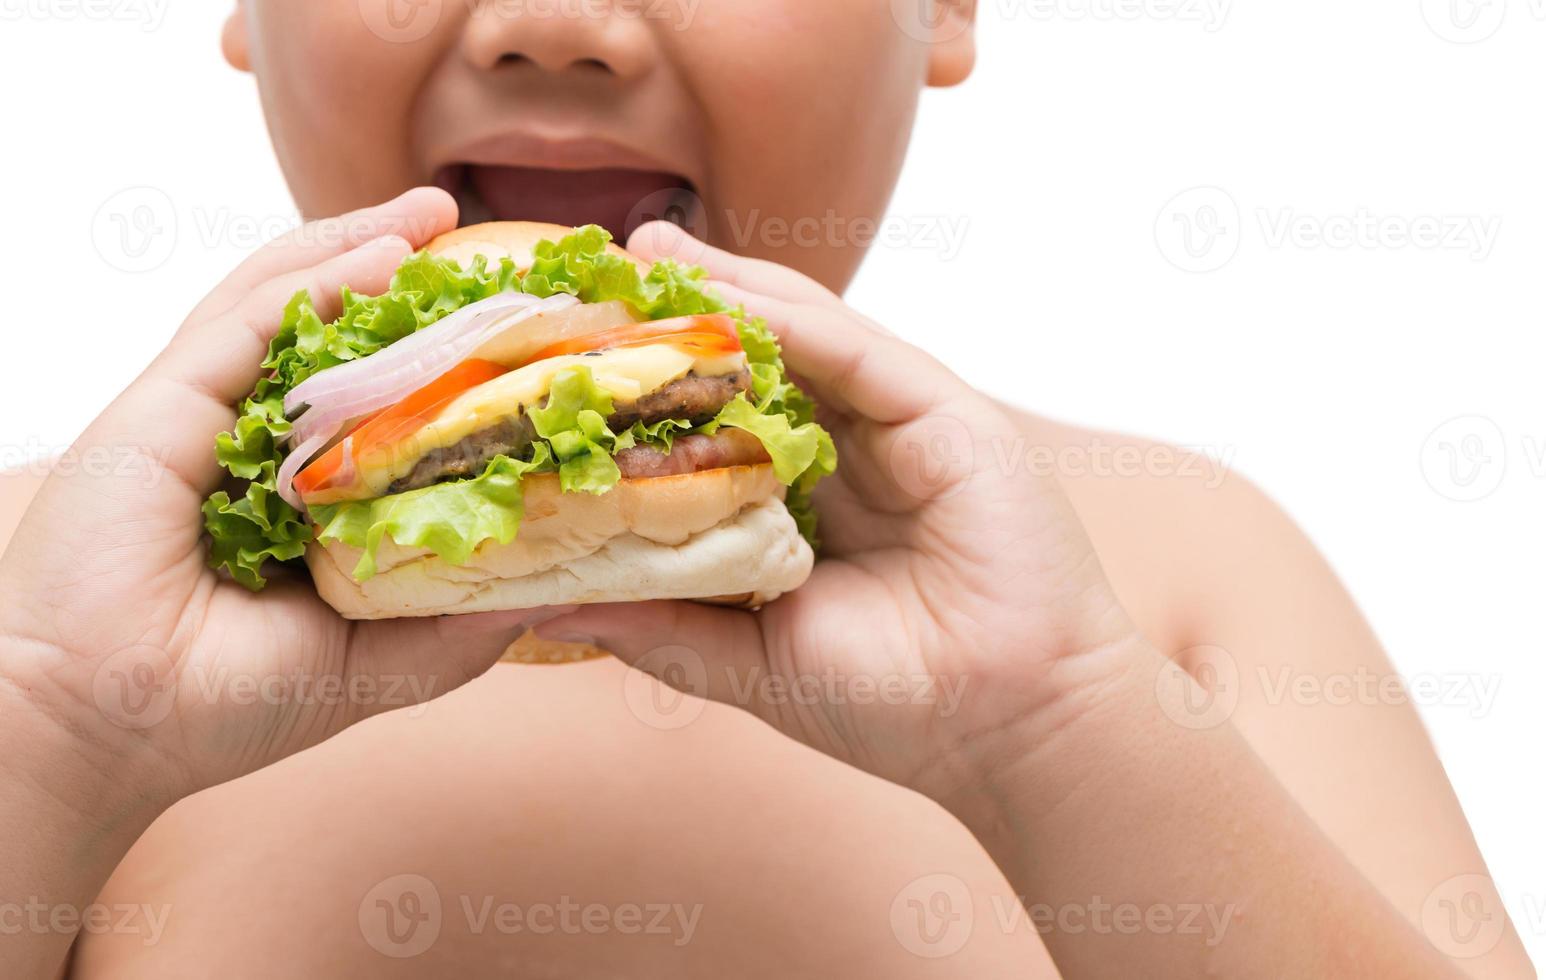 Hamburger in obese fat boy hand photo